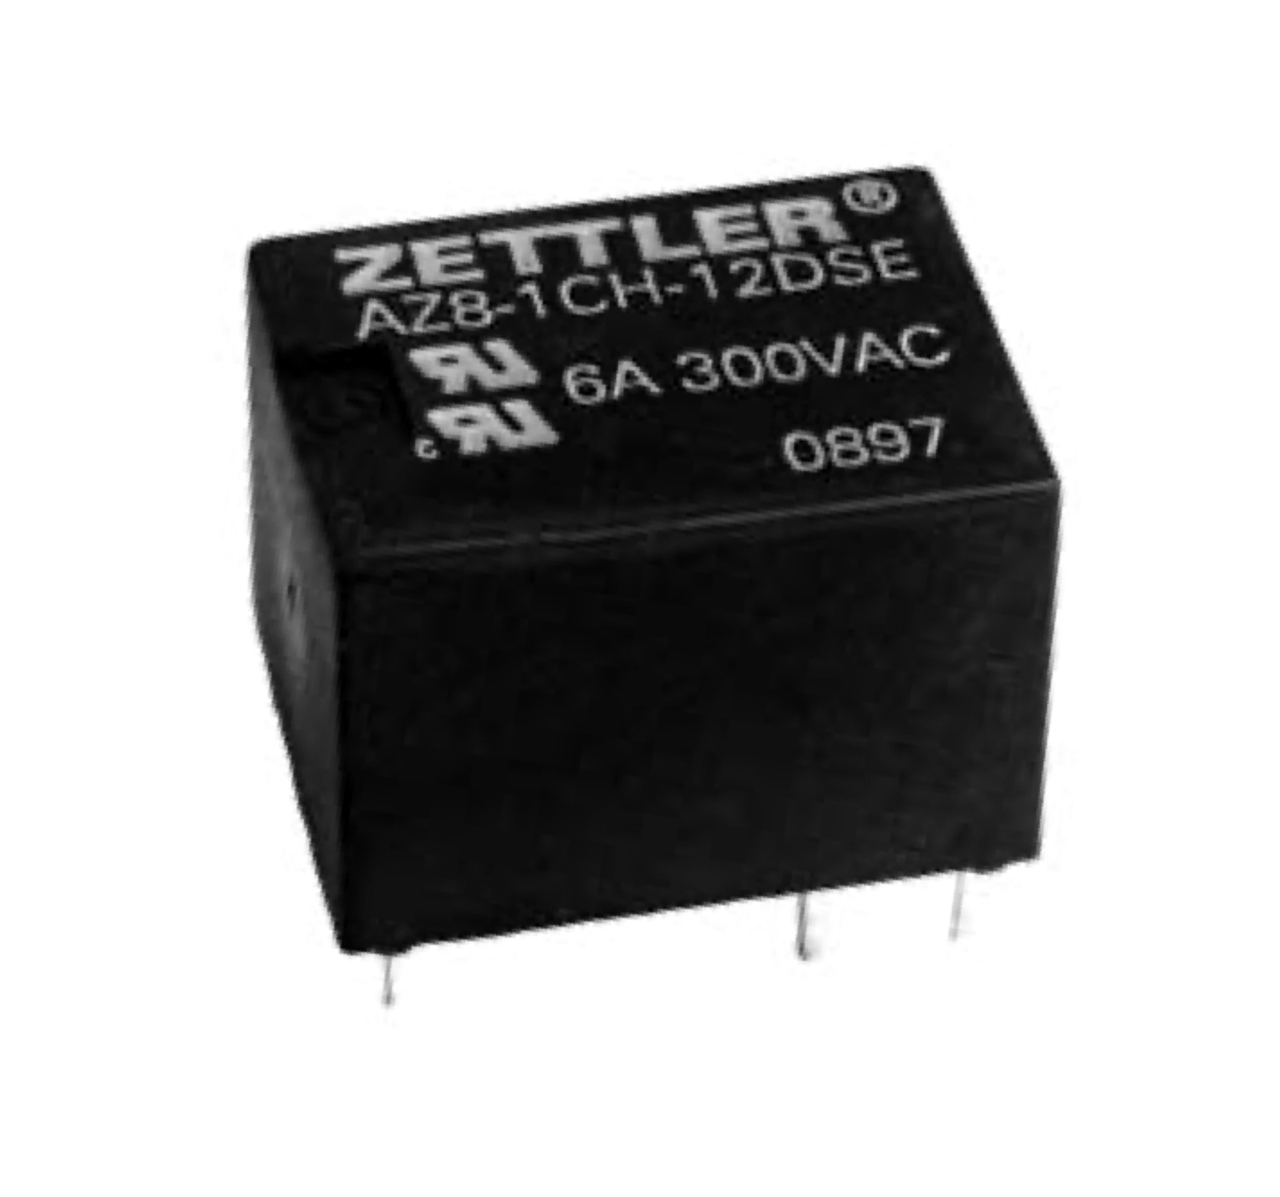 American Zettler AZ8-1CH-6DA Power Relay